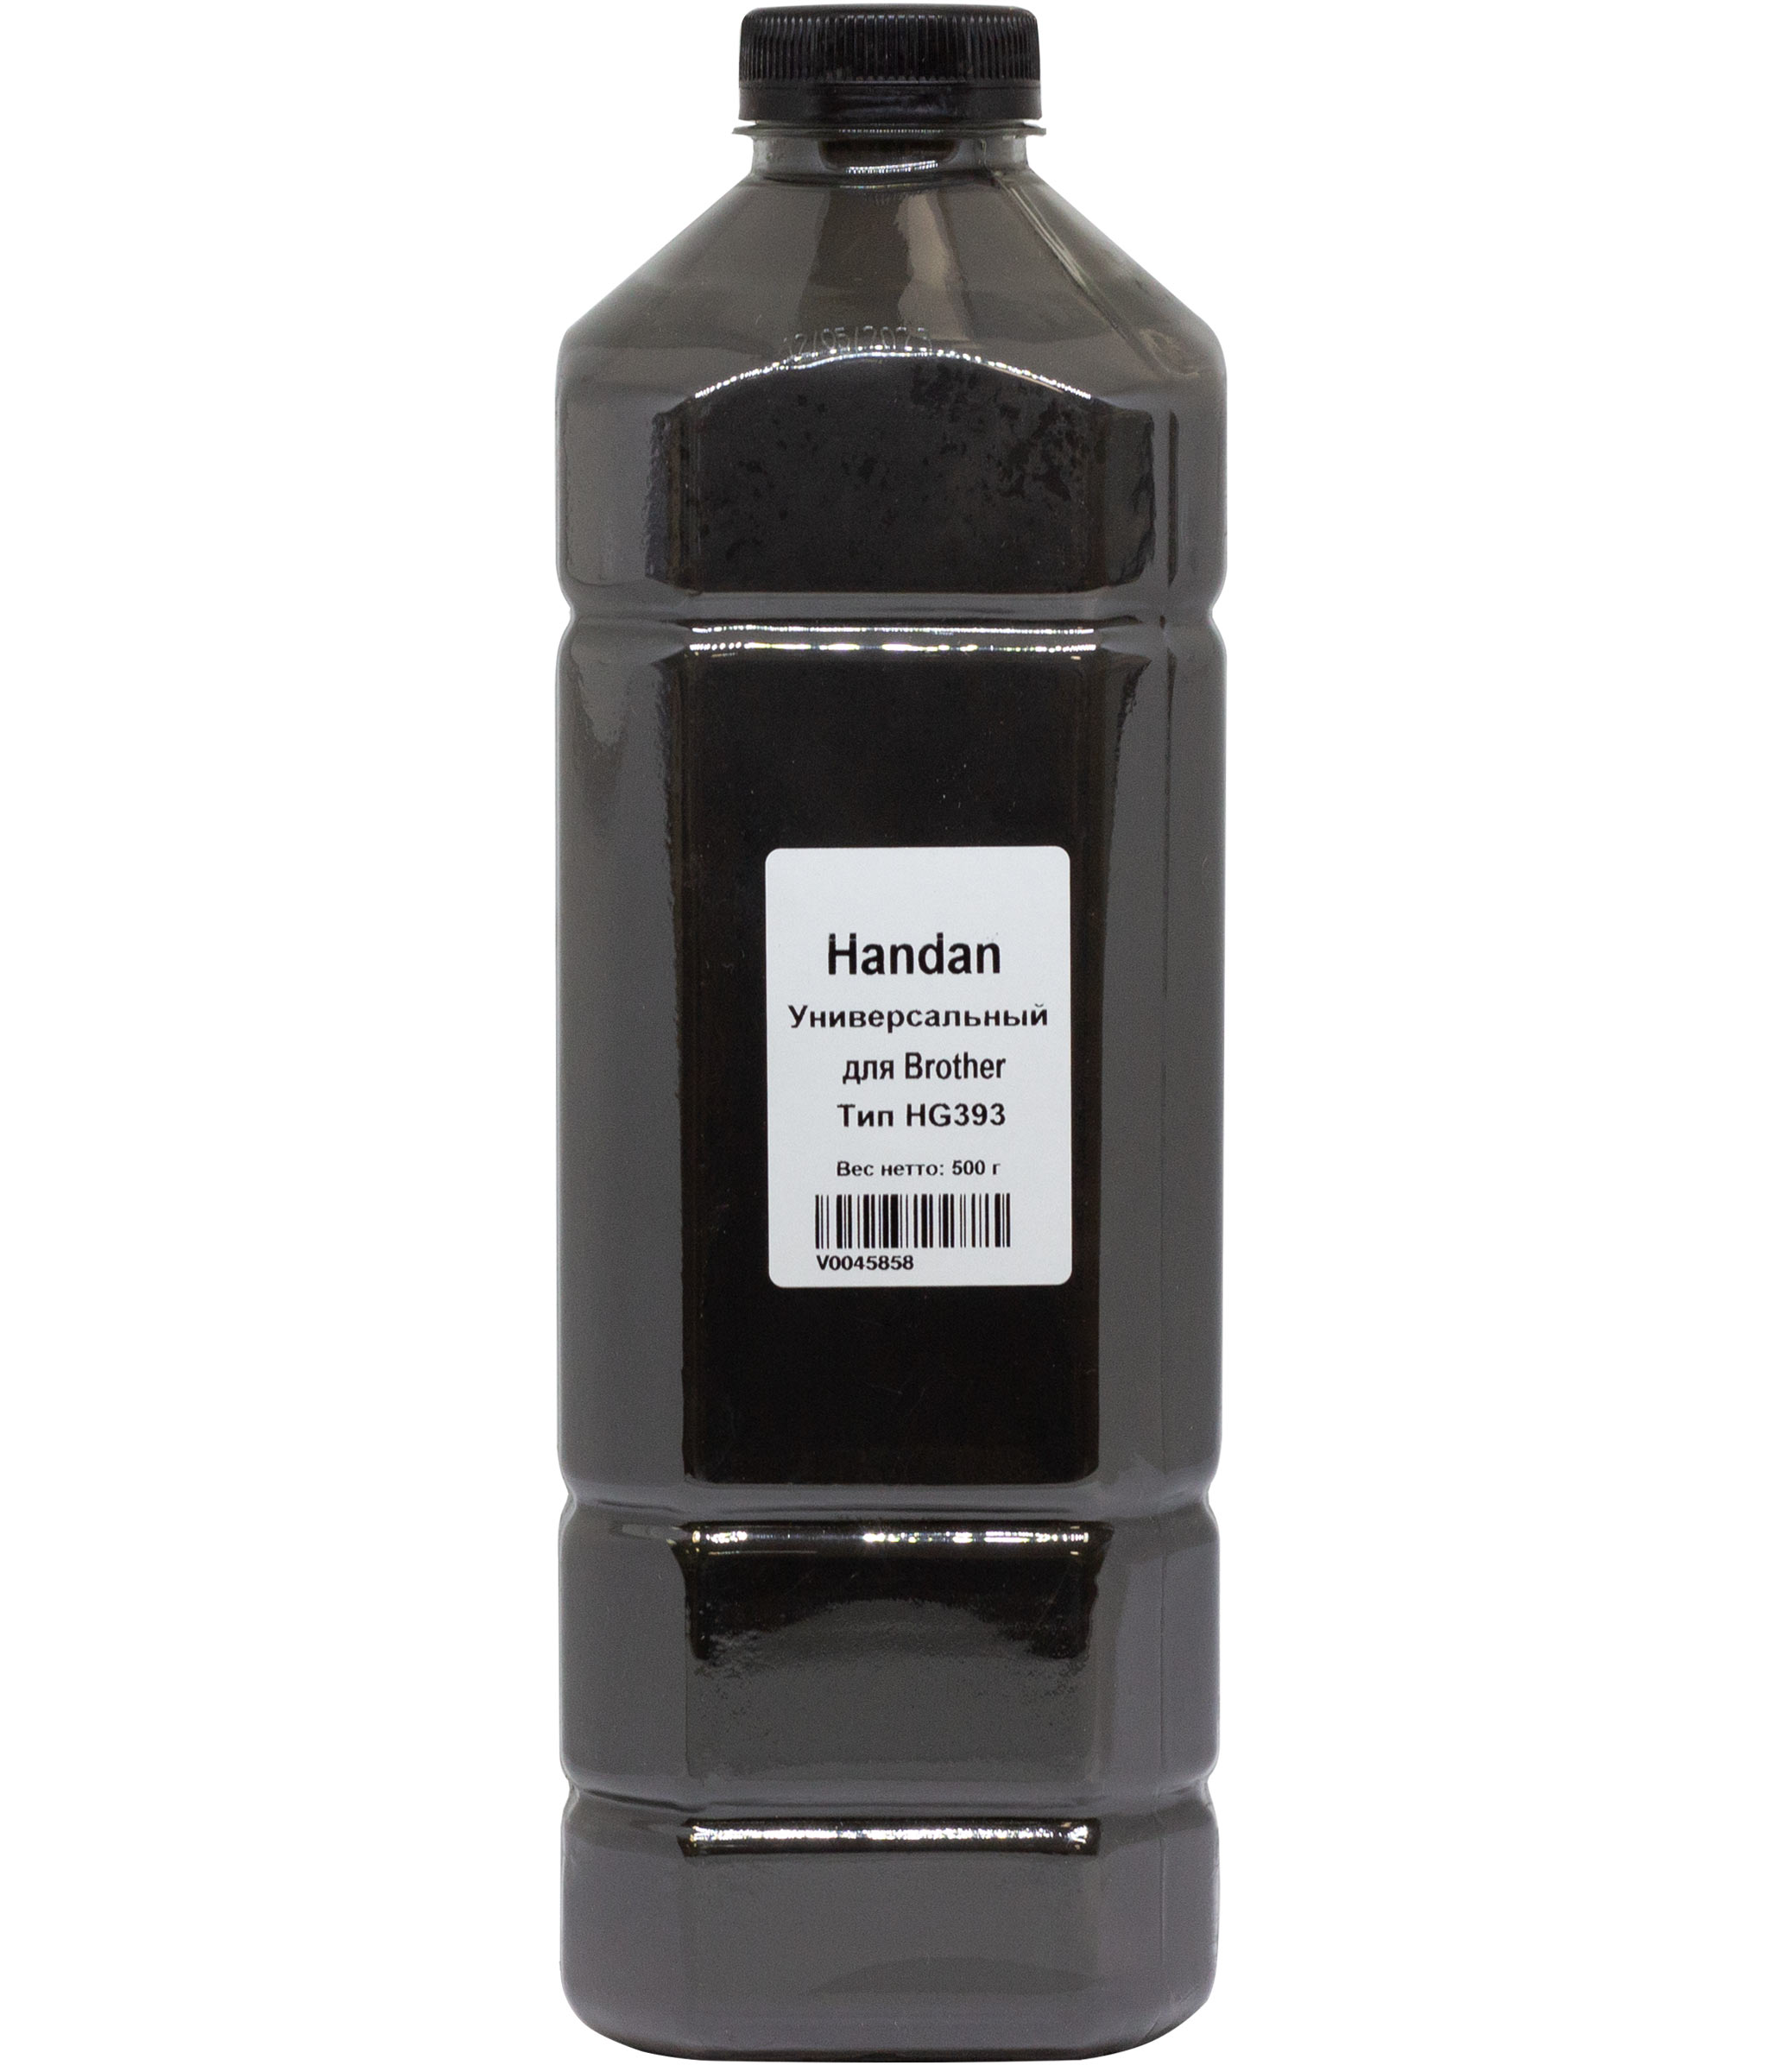 Тонер Handan Тип HG393, канистра 500 г, черный, совместимый для Brother, универсальный